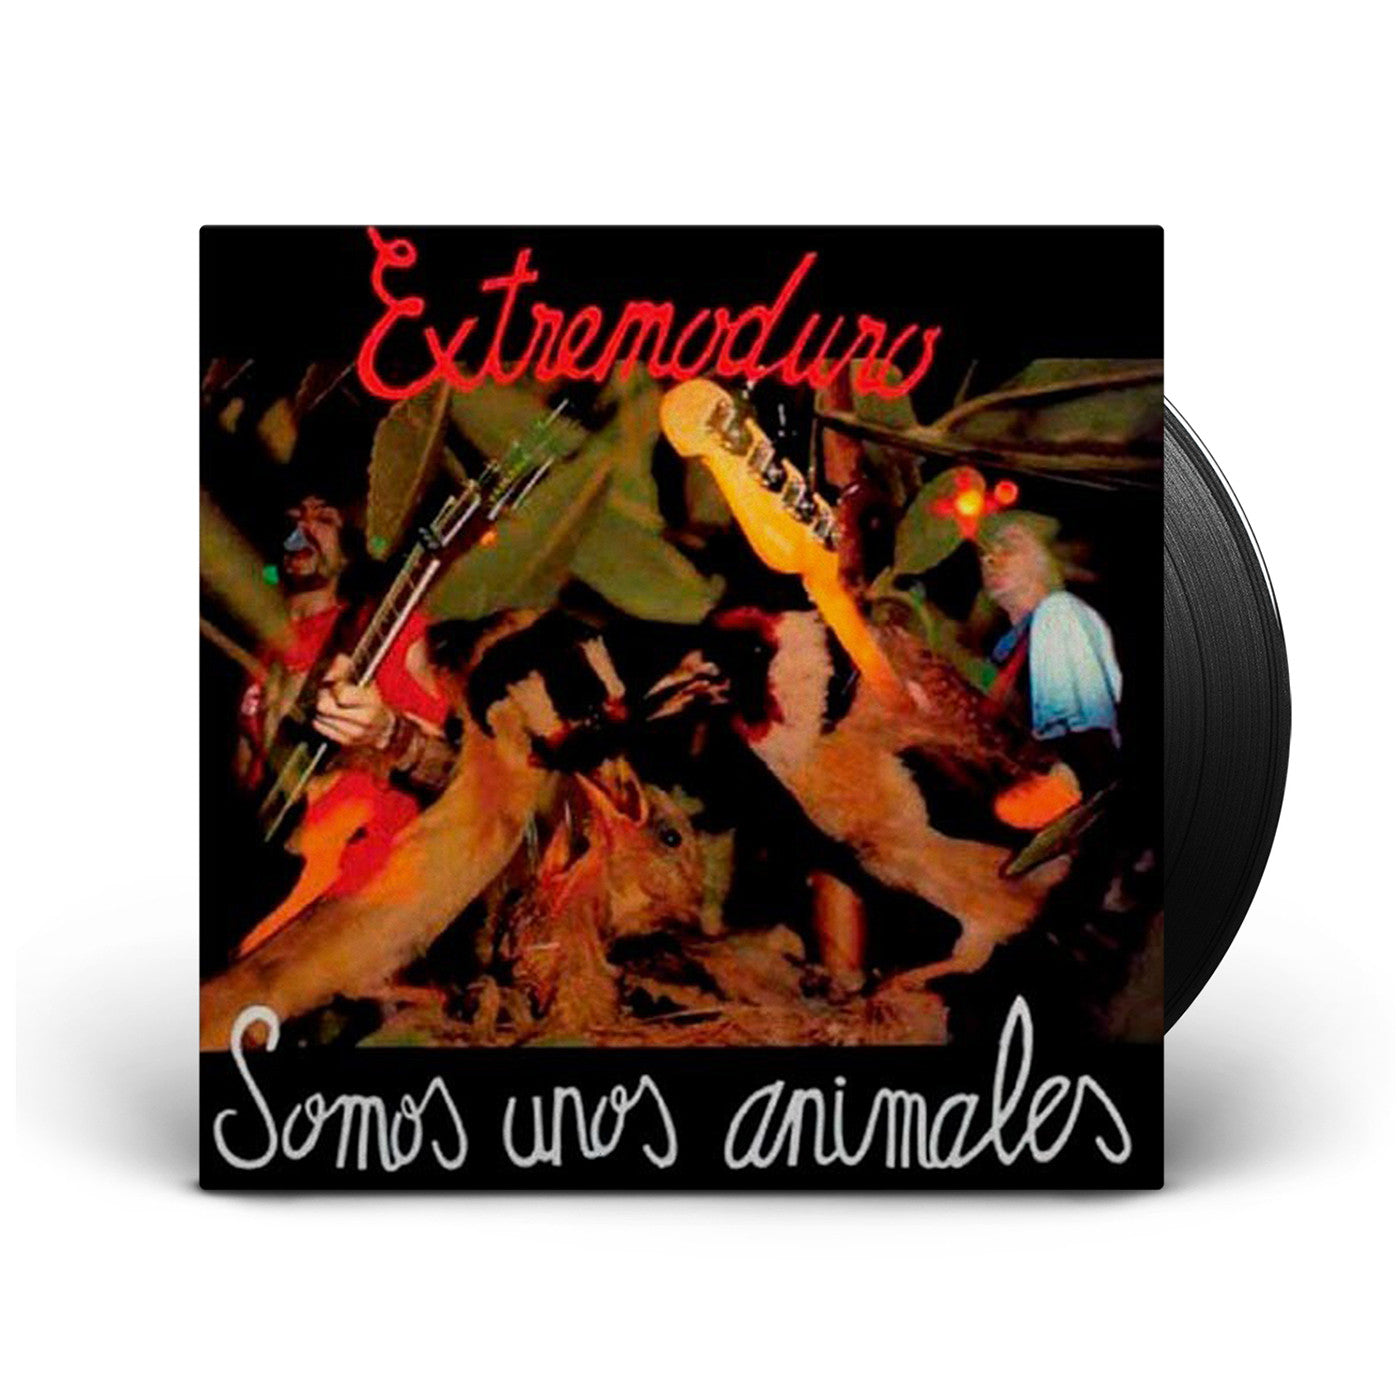 Extremoduro - LP Vinilo + CD Donde Están Mis Amigos